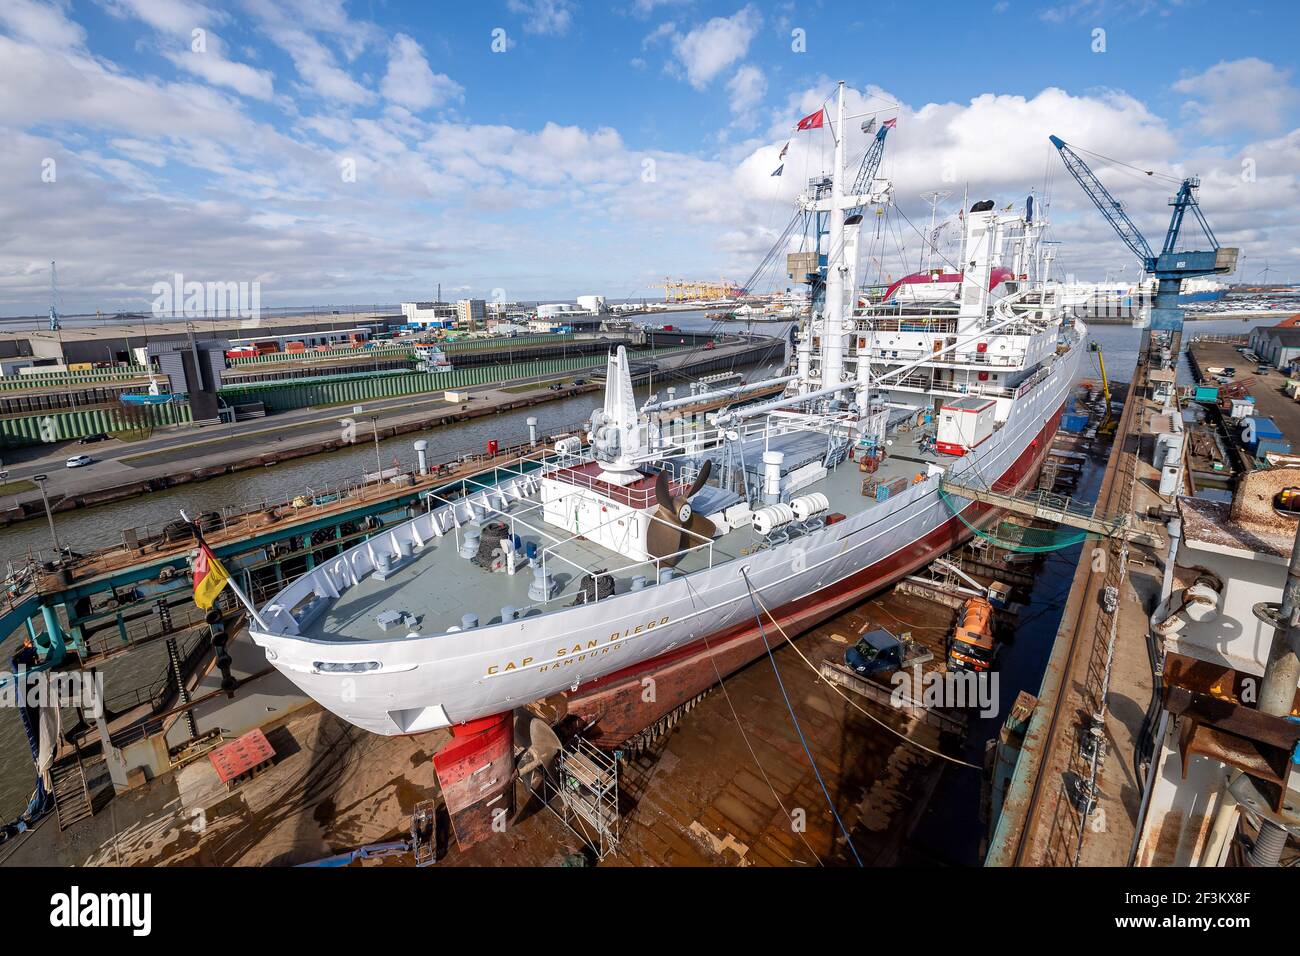 17 marzo de Bremen, Bremerhaven: El 'Cap San Diego' está en el astillero para trabajos de construcción. El barco museo de Hamburgo, de casi 60 años de antigüedad, está pasando